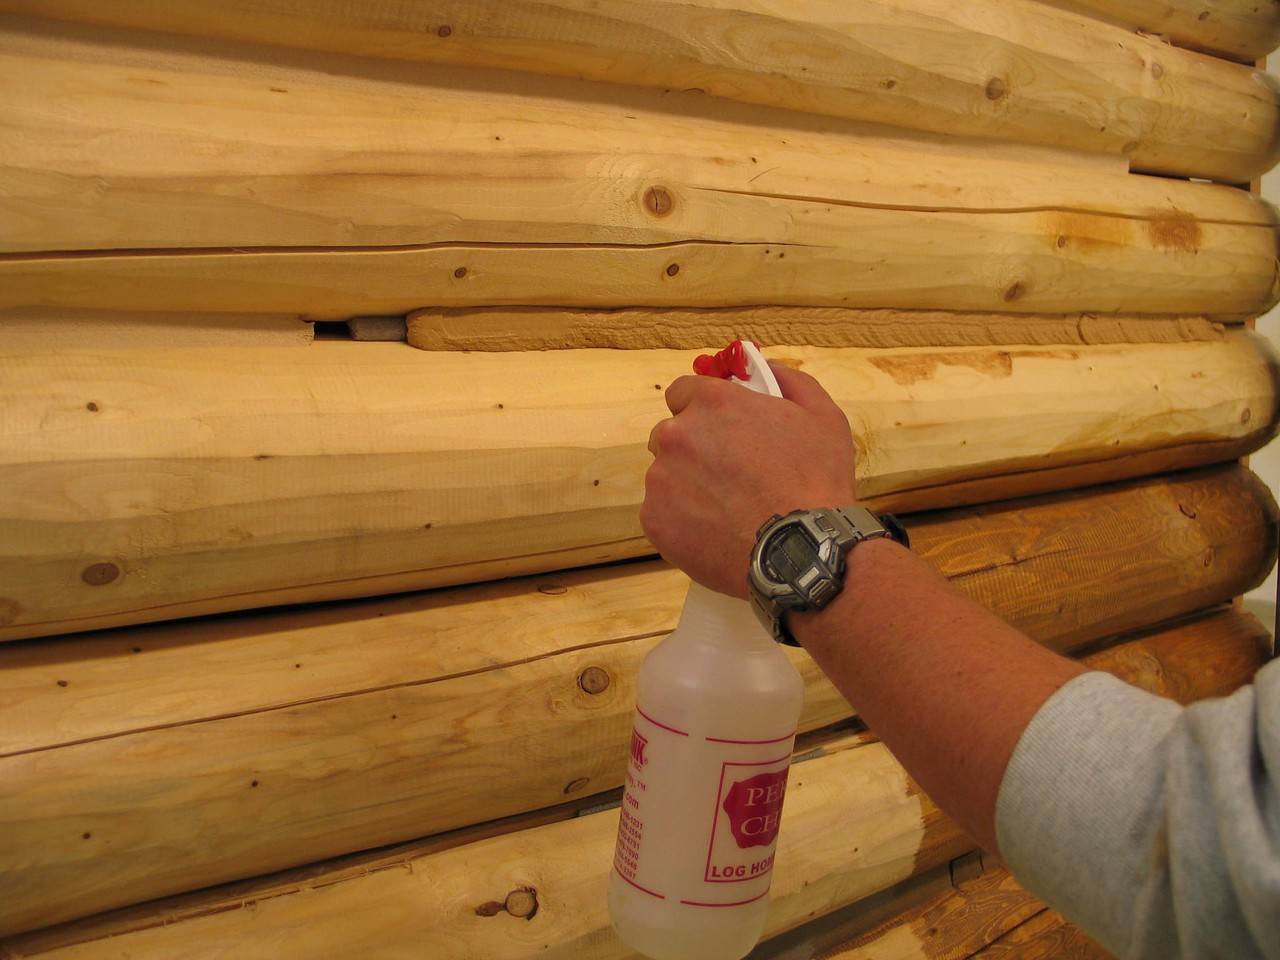 Герметизация деревянных домов — востребованные способы и материалы, опыт участников портала